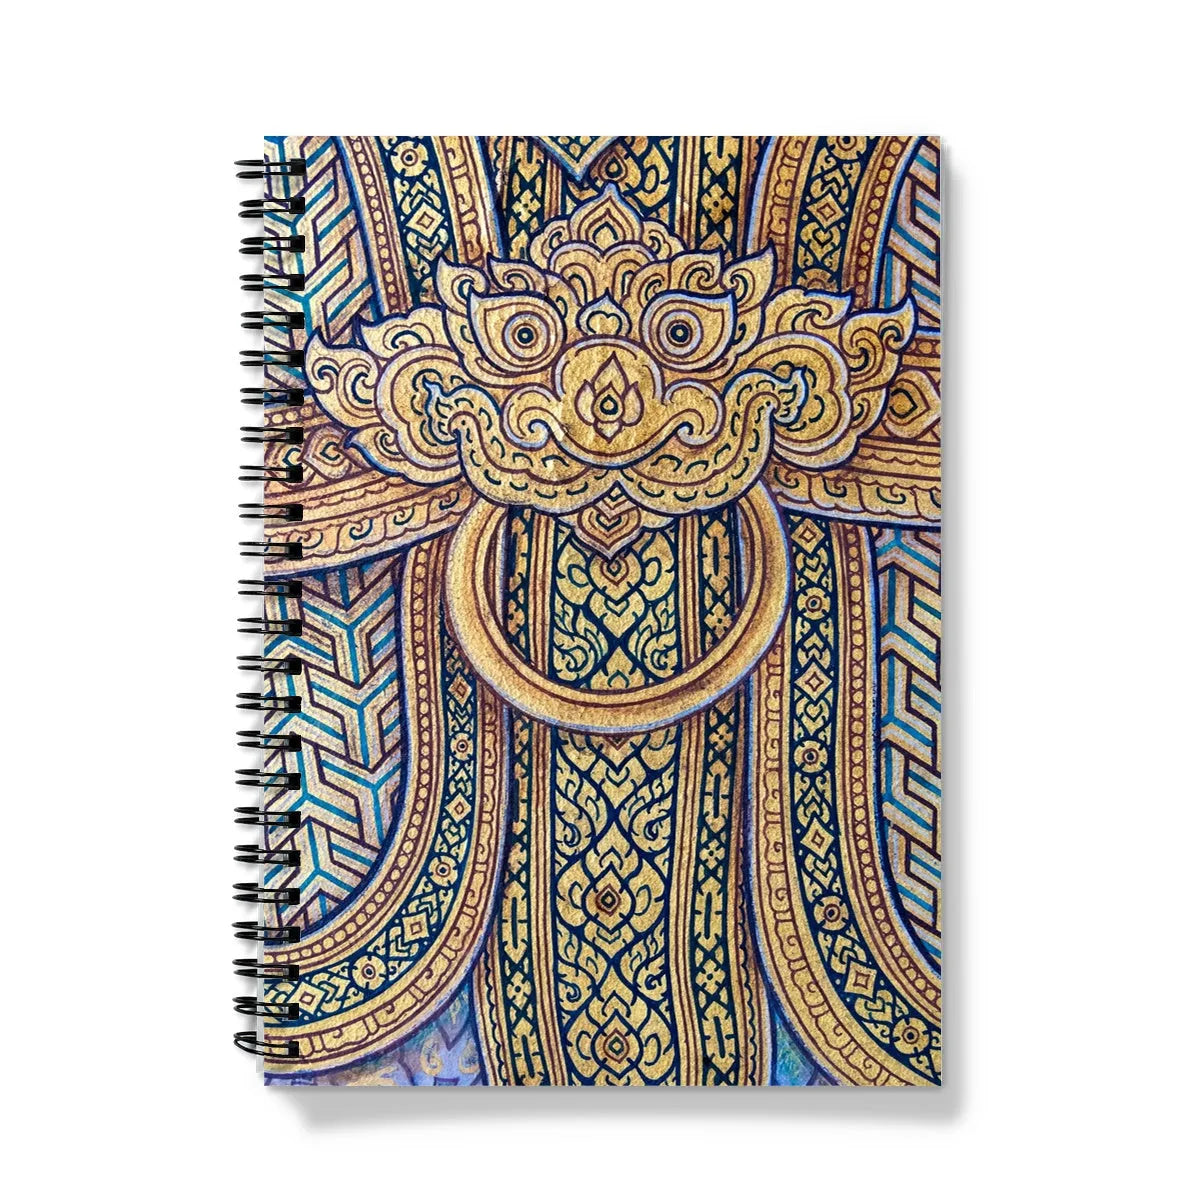 Man’s Best Friend Notebook - A5 - Graph Paper - Notebooks & Notepads - Aesthetic Art